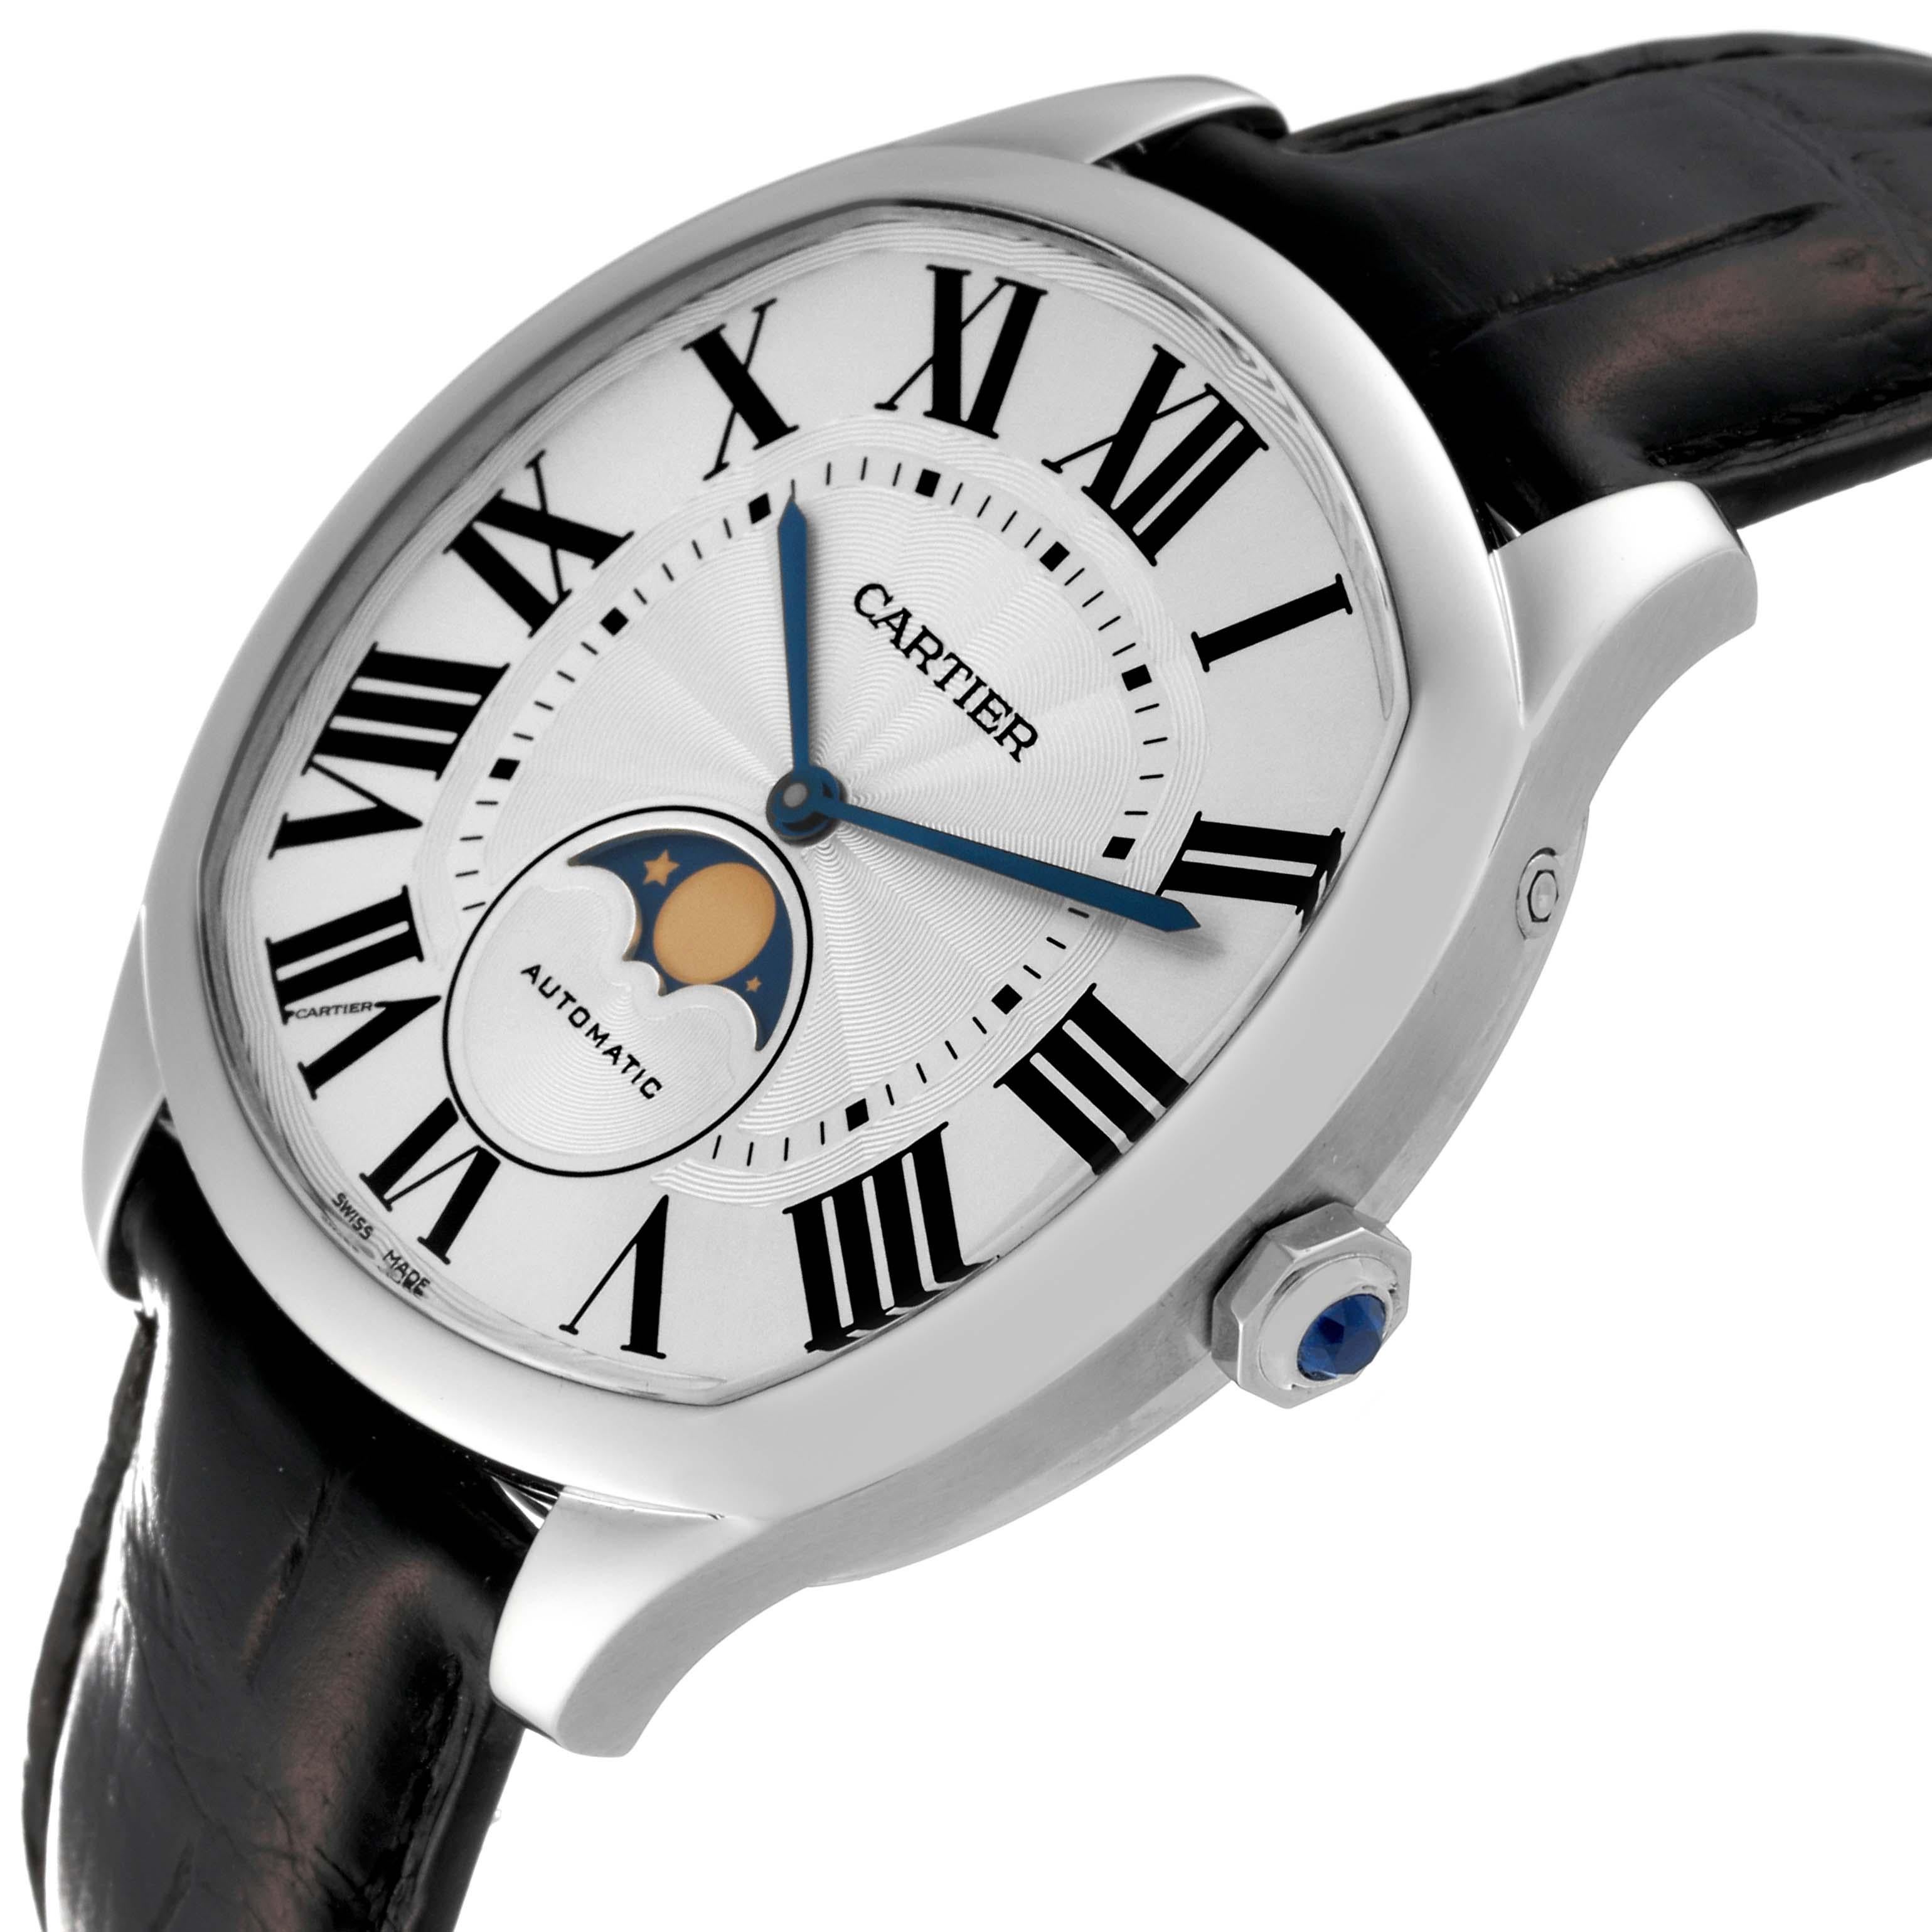 Cartier Drive Silber Zifferblatt Mondphase Stahl Herrenuhr WSNM0008. Automatisches Uhrwerk mit Selbstaufzug. Kissenförmiges Edelstahlgehäuse mit einem Durchmesser von 40,0 mm. Krone besetzt mit facettiertem blauem Spinell. Transparenter